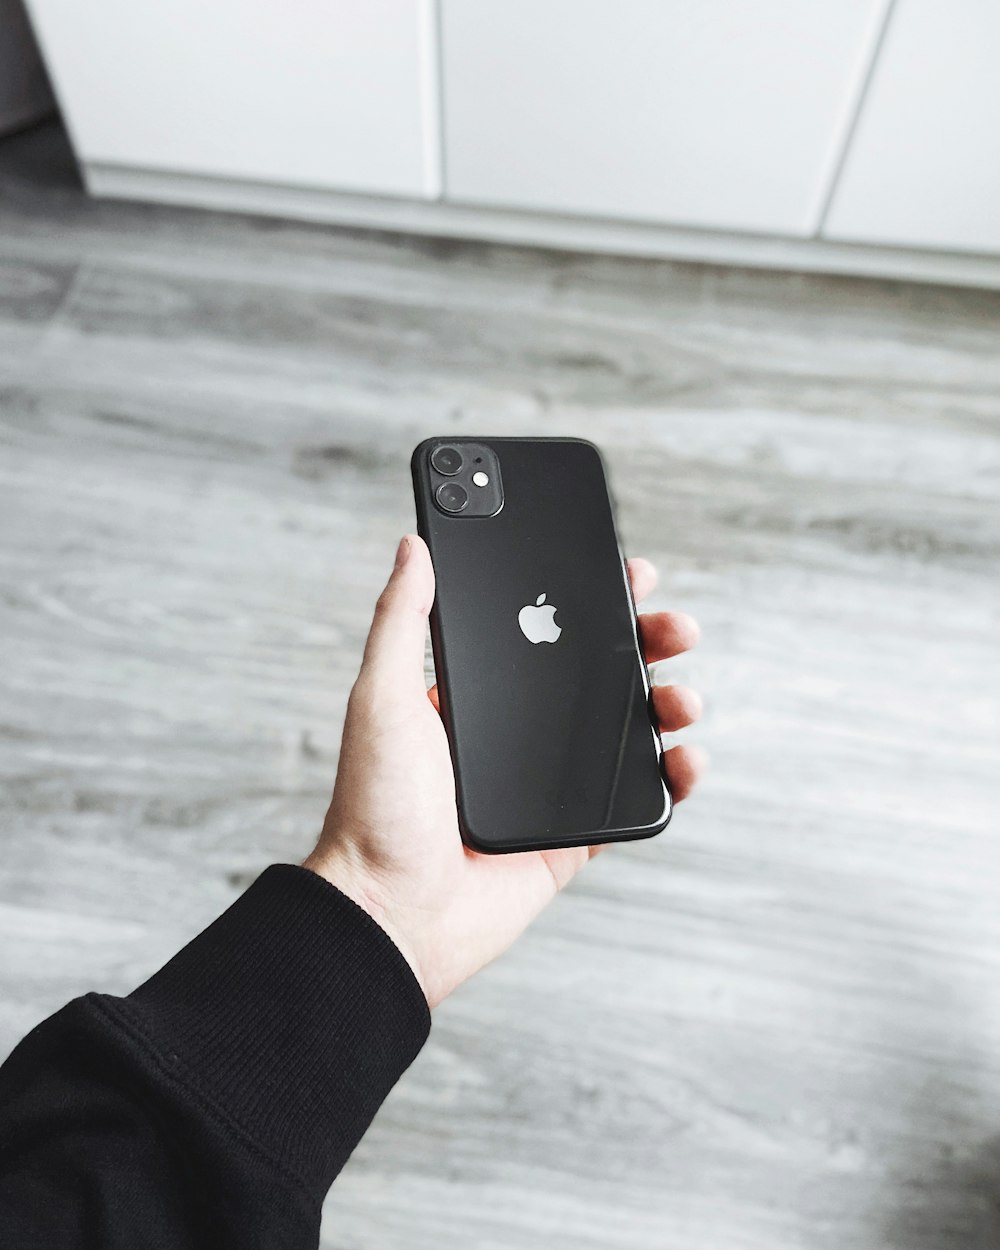 une personne détient un iPhone postérieur à 2019